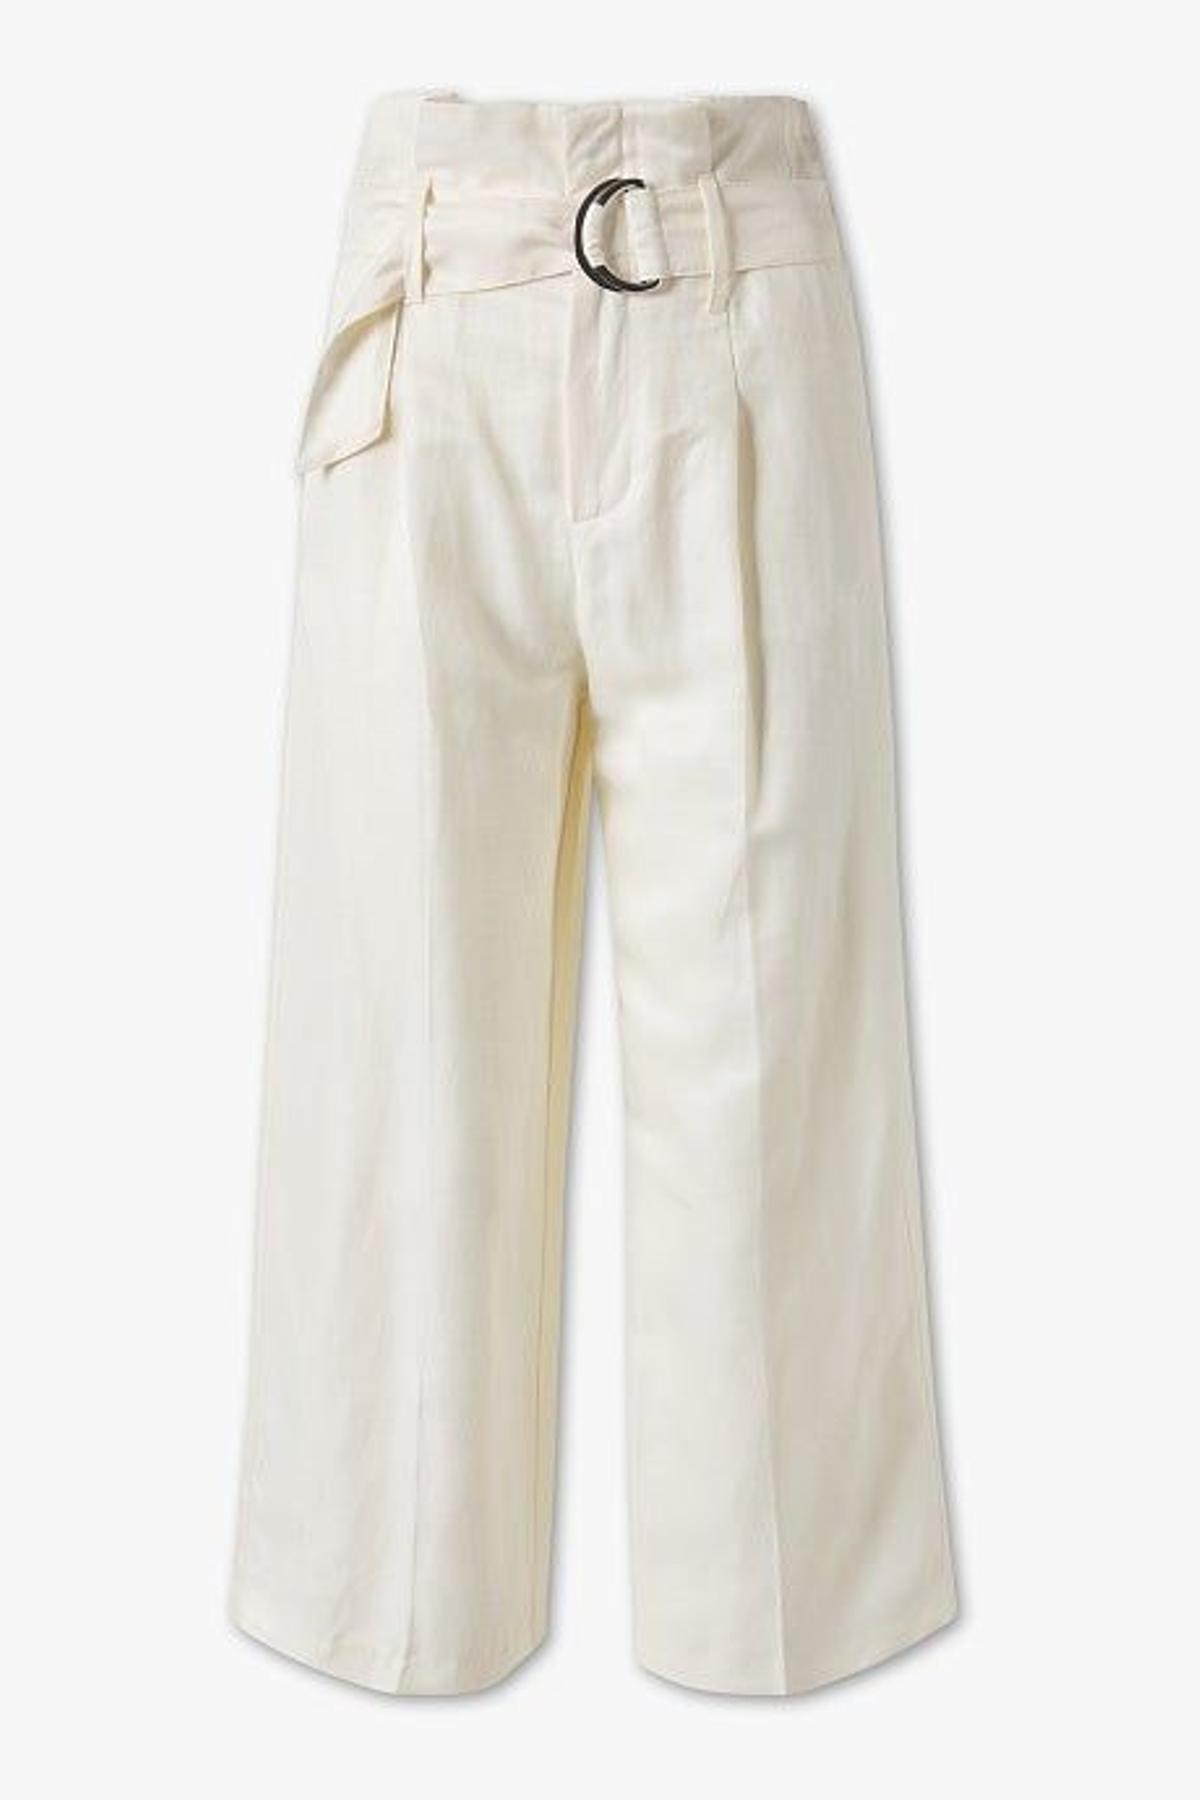 Pantalón cullote blanco con cinturón (Precio: 39,90 euros)